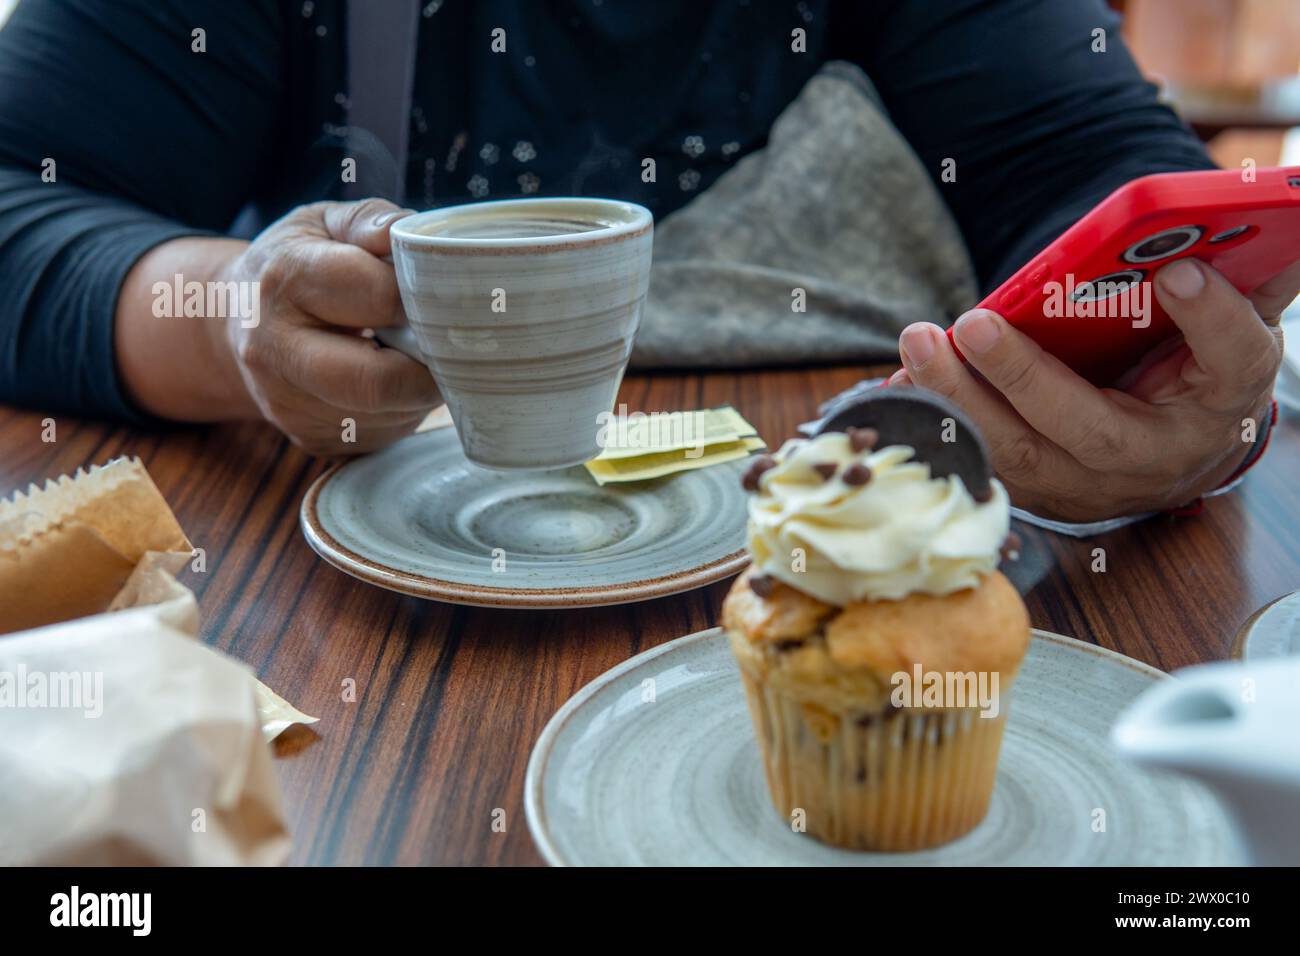 Primo piano di una persona irriconoscibile che beve una tazza di caffè con dolcificante e guarda il suo cellulare accanto a un dessert Foto Stock